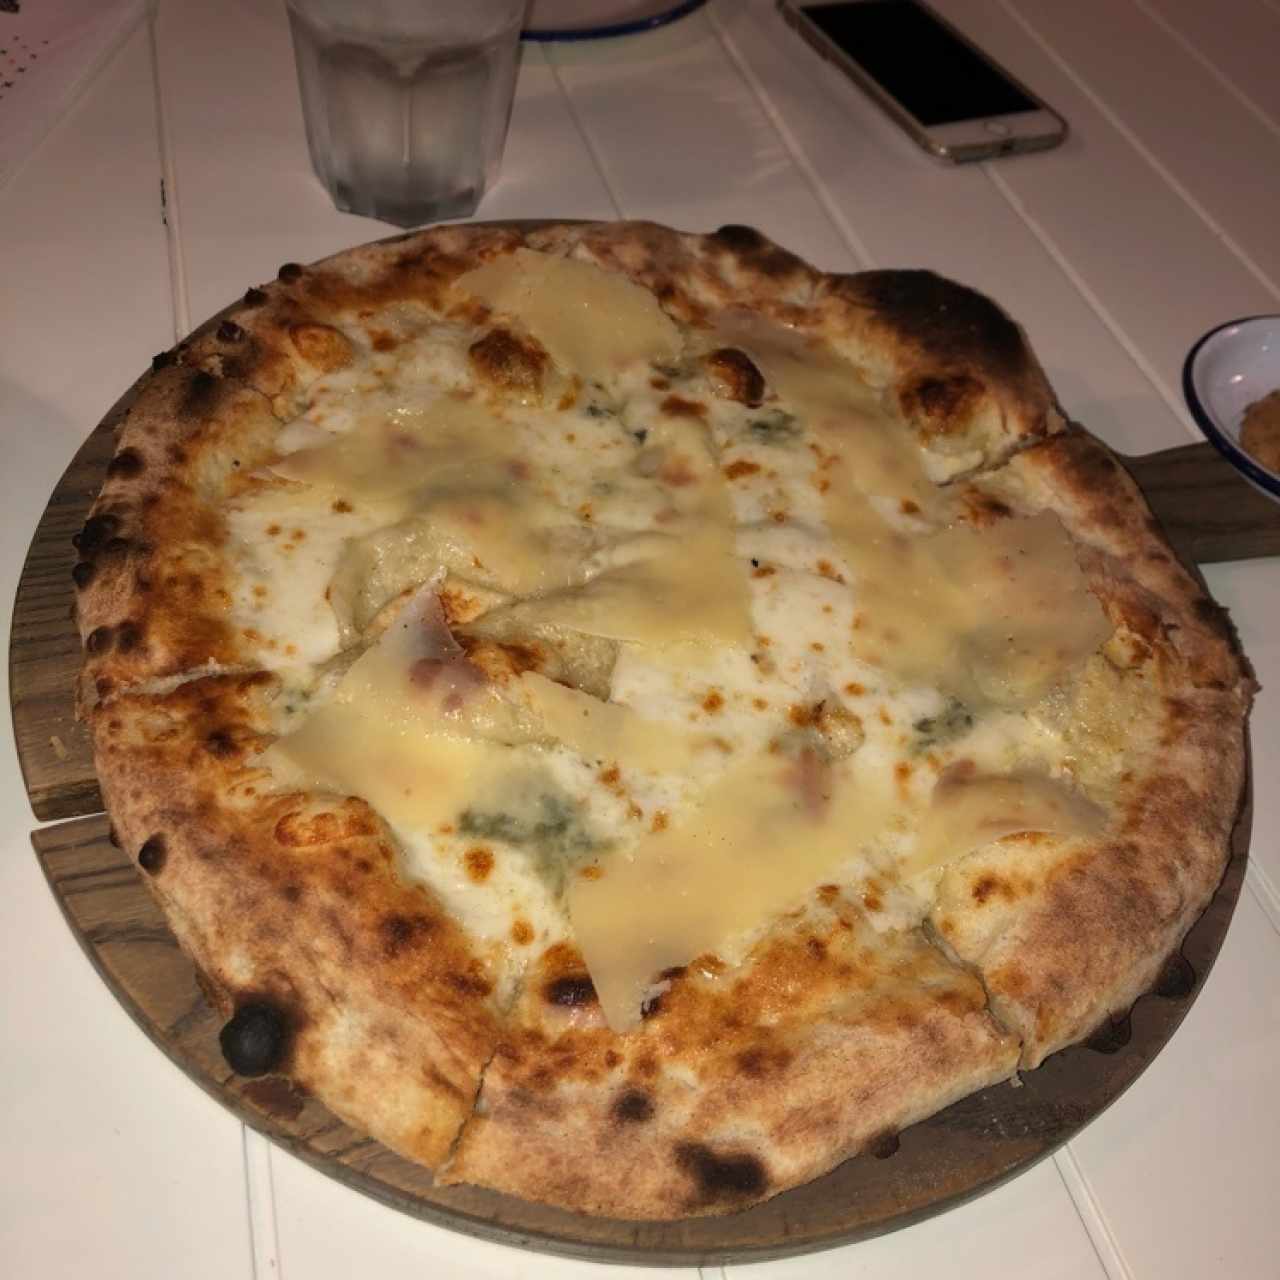 pizza qatro quesos